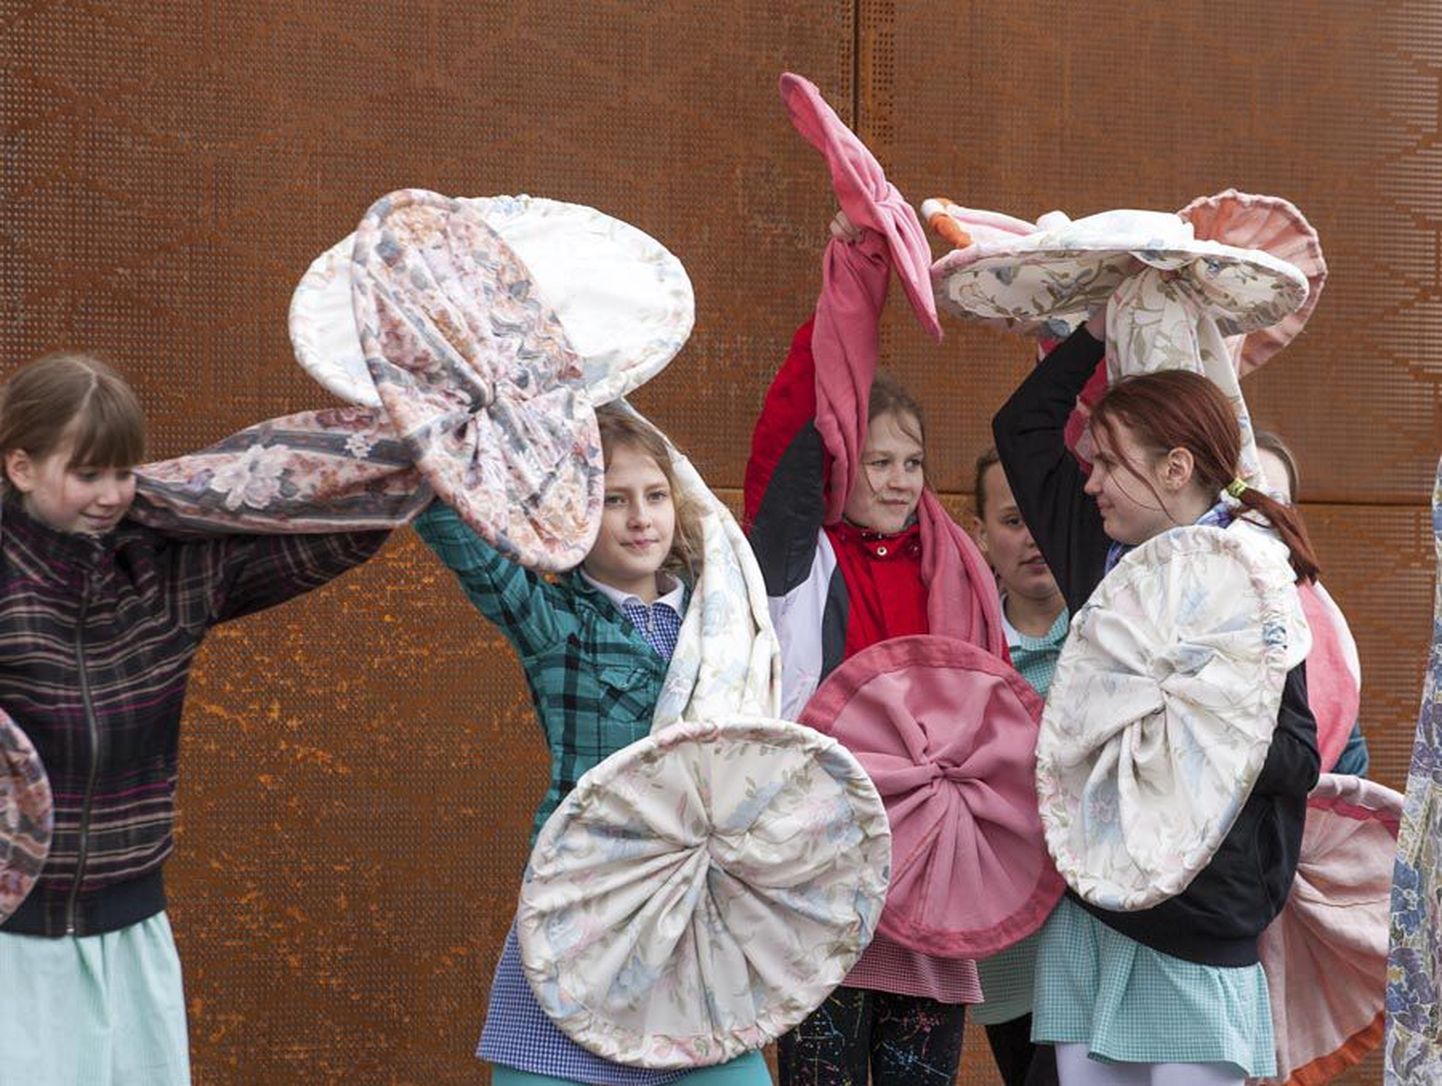 Tantsupäeva eel korraldatakse Viljandis tantsunädalat juba seitsmendat aastat. Foto on tehtud mullusel rahvusvahelise tantsupäeva aktsioonil Uku keskuse ees.